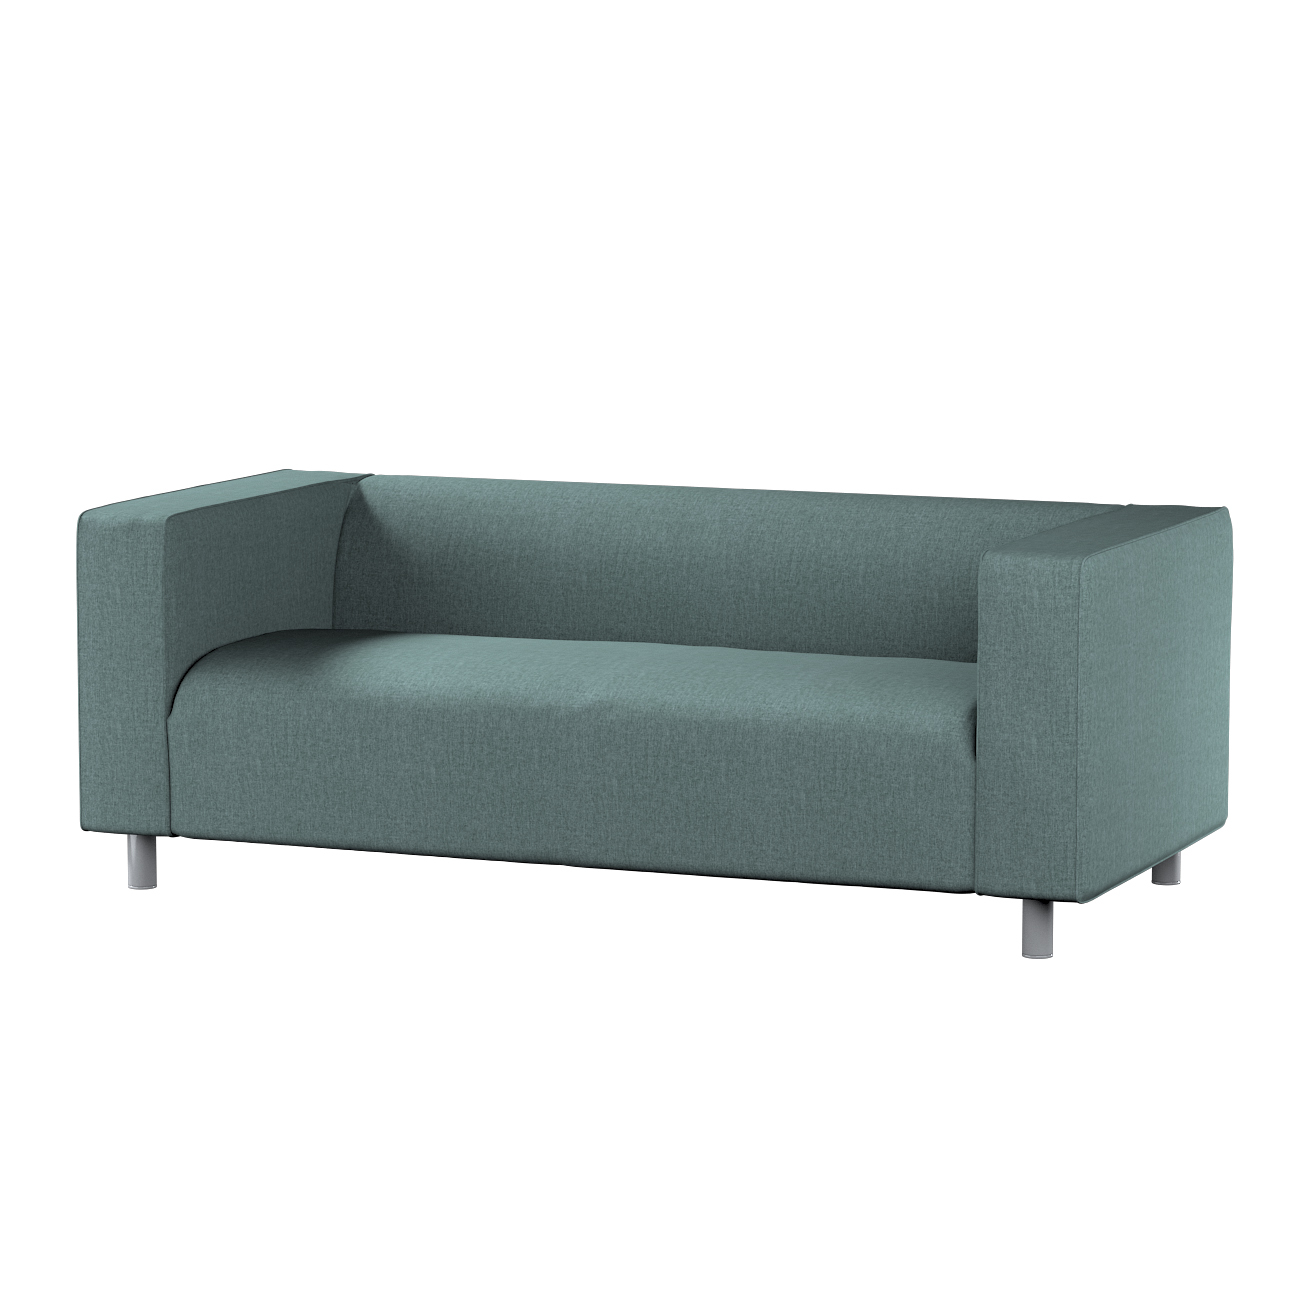 Bezug für Klippan 2-Sitzer Sofa, grau- blau, Sofahusse, Klippan 2-Sitzer, C günstig online kaufen